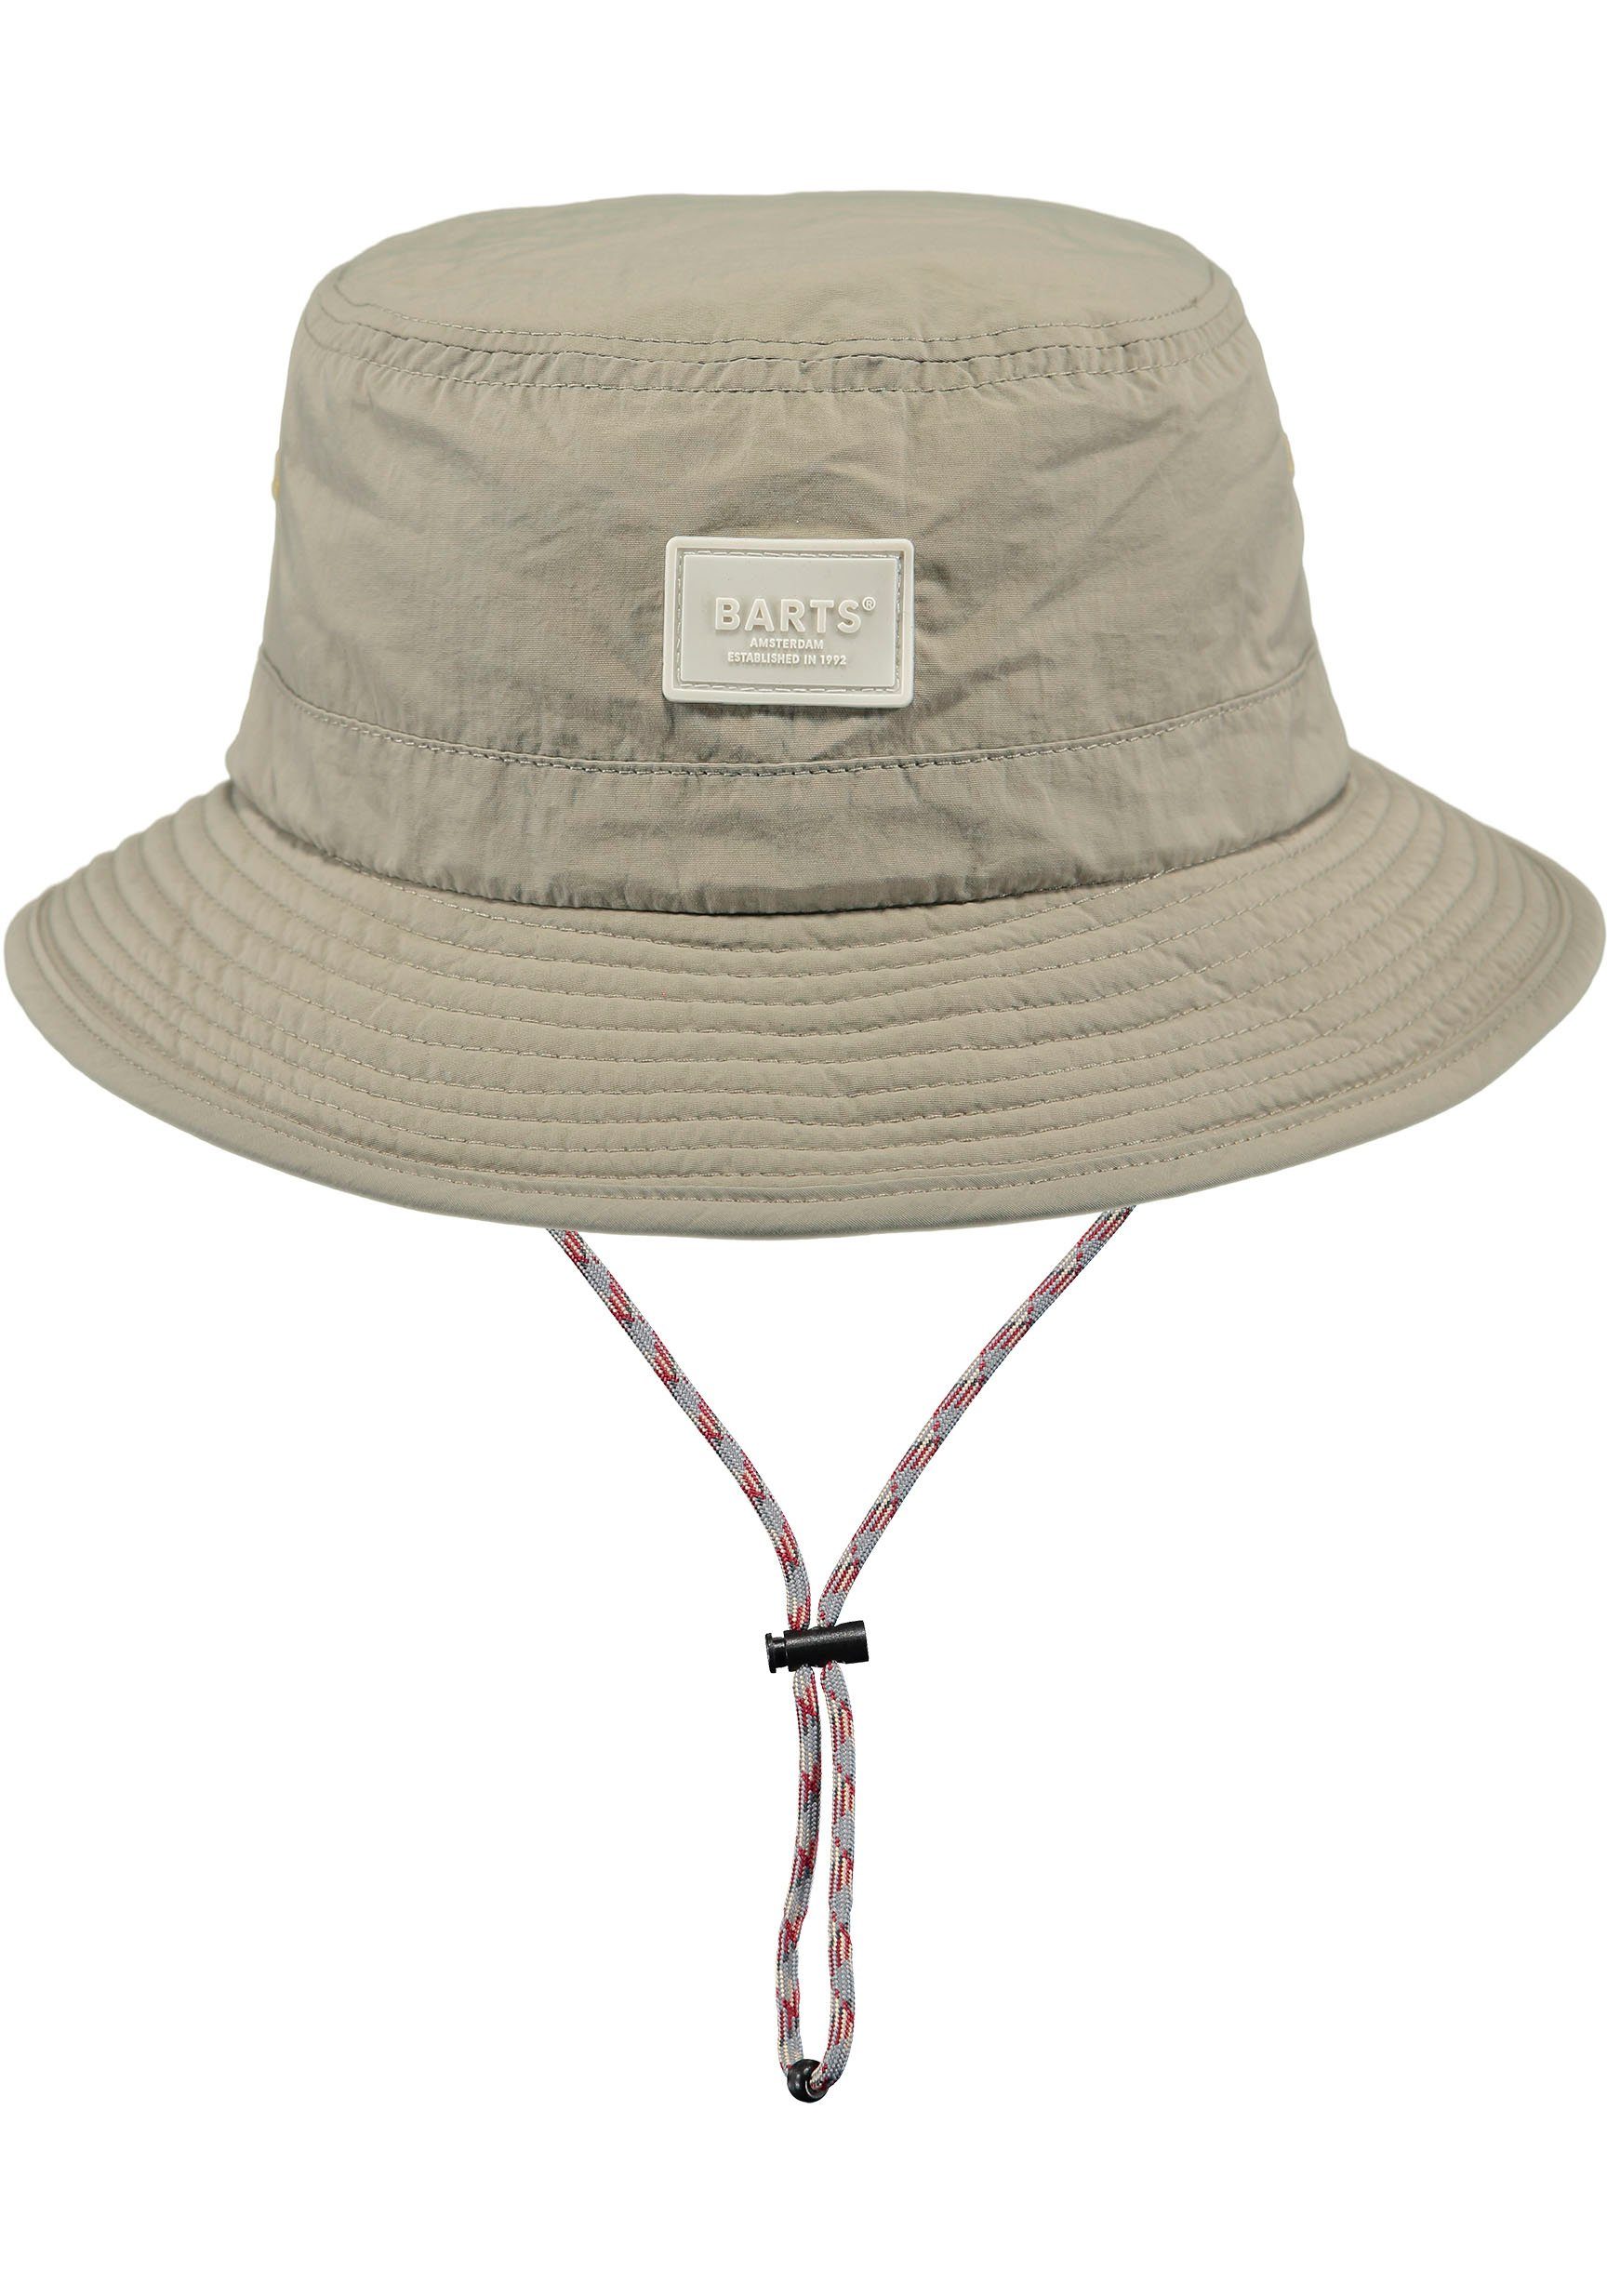 Barts Fischerhut mit Bindeband, verstellbare Passform durch innenliegendes Hutband natur | Sonnenhüte